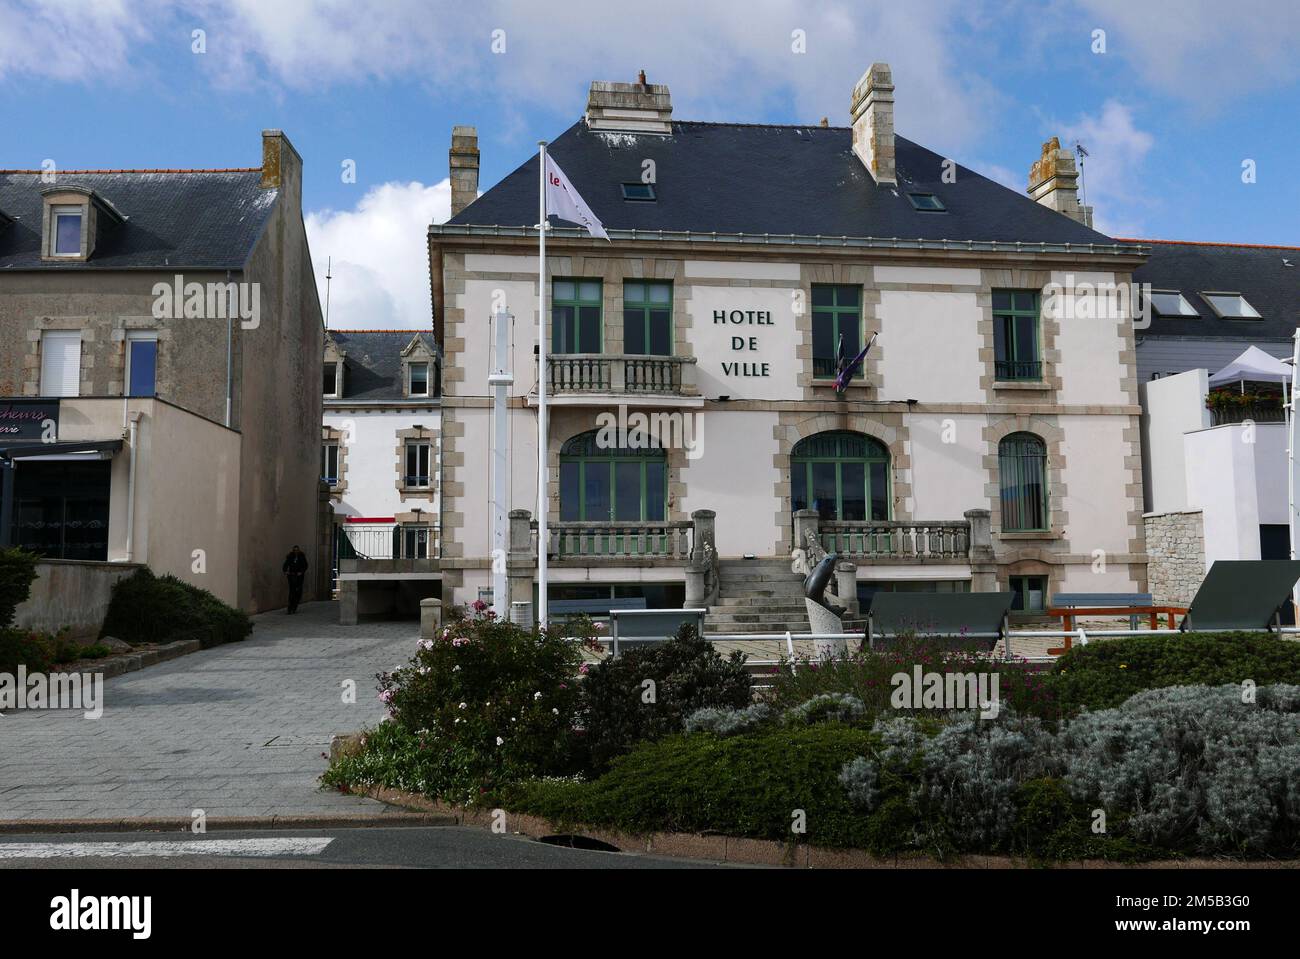 Le Guilvinec, Hôtel de ville, Finistère, Bretagne, France, Europe Banque D'Images